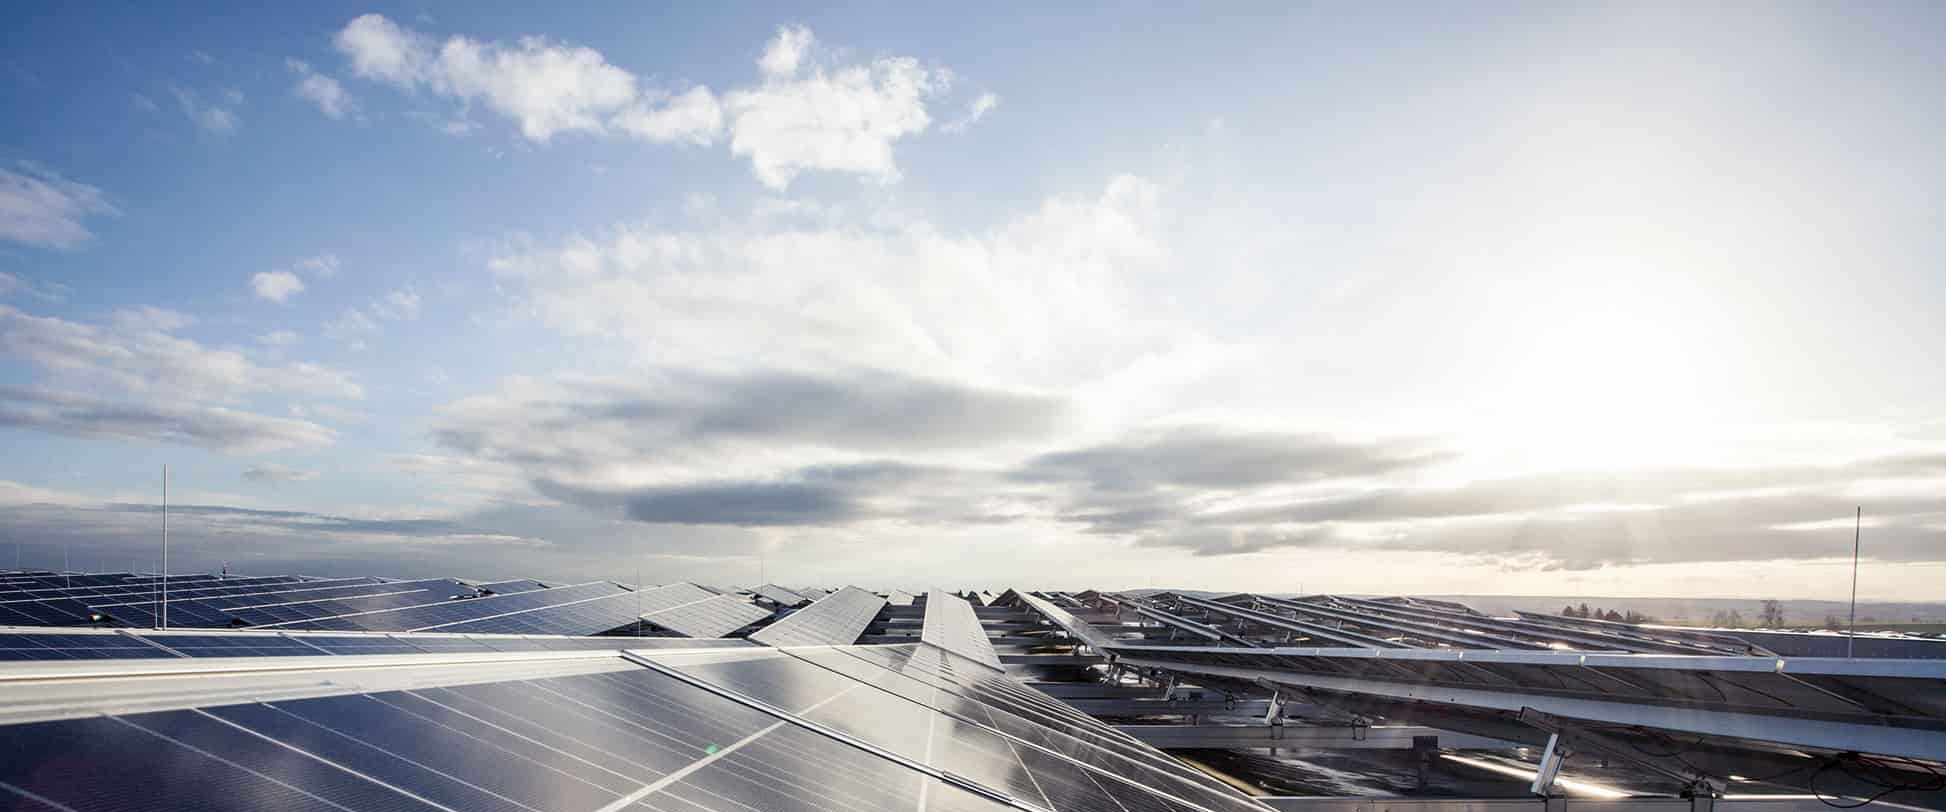 Solarzellen als Zeichen für Nachhaltigkeit